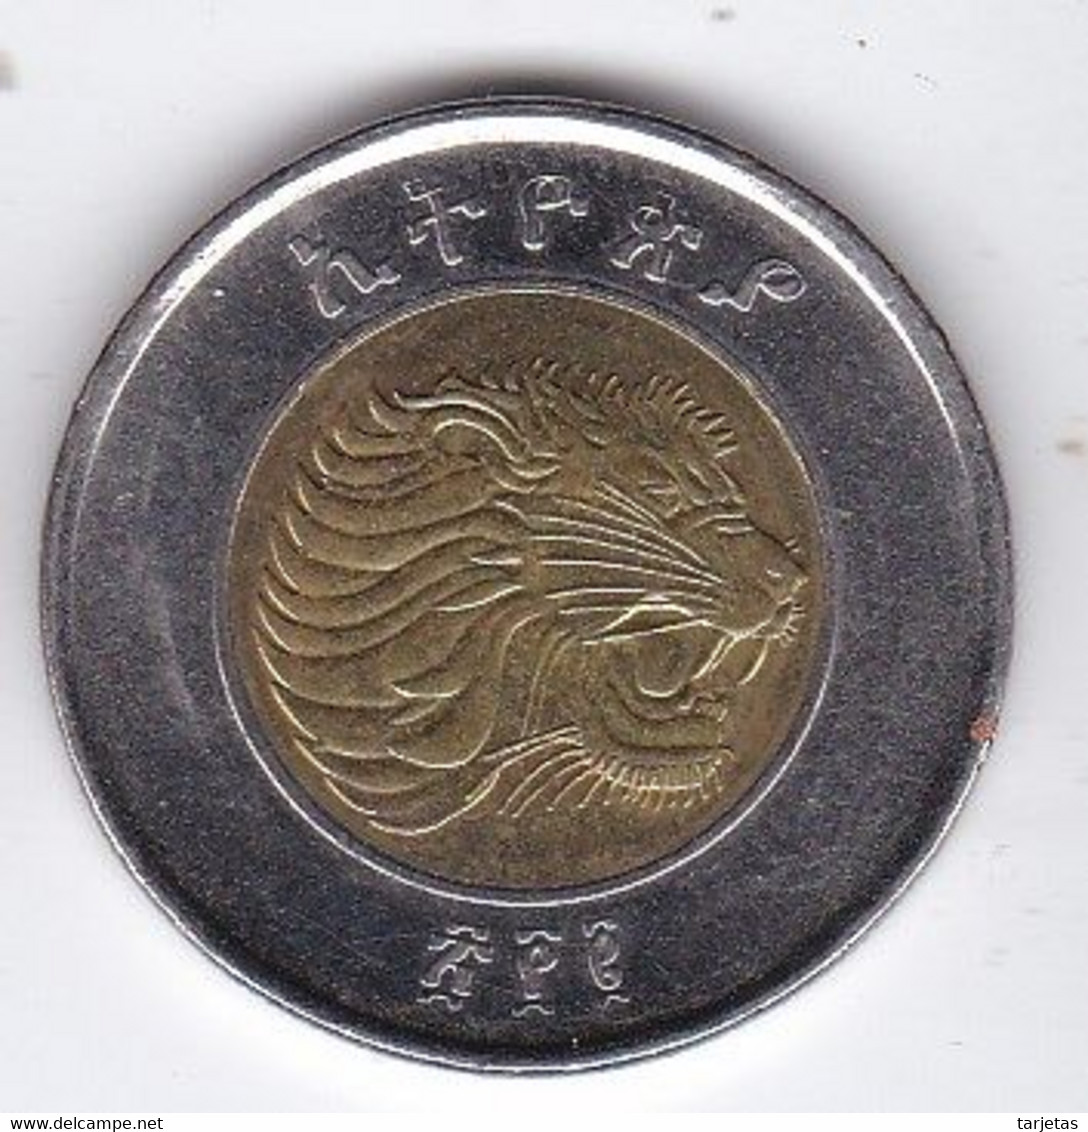 MONEDA DE ETIOPIA DE 1BIRR DEL AÑO 2002  (COIN) - Ethiopië